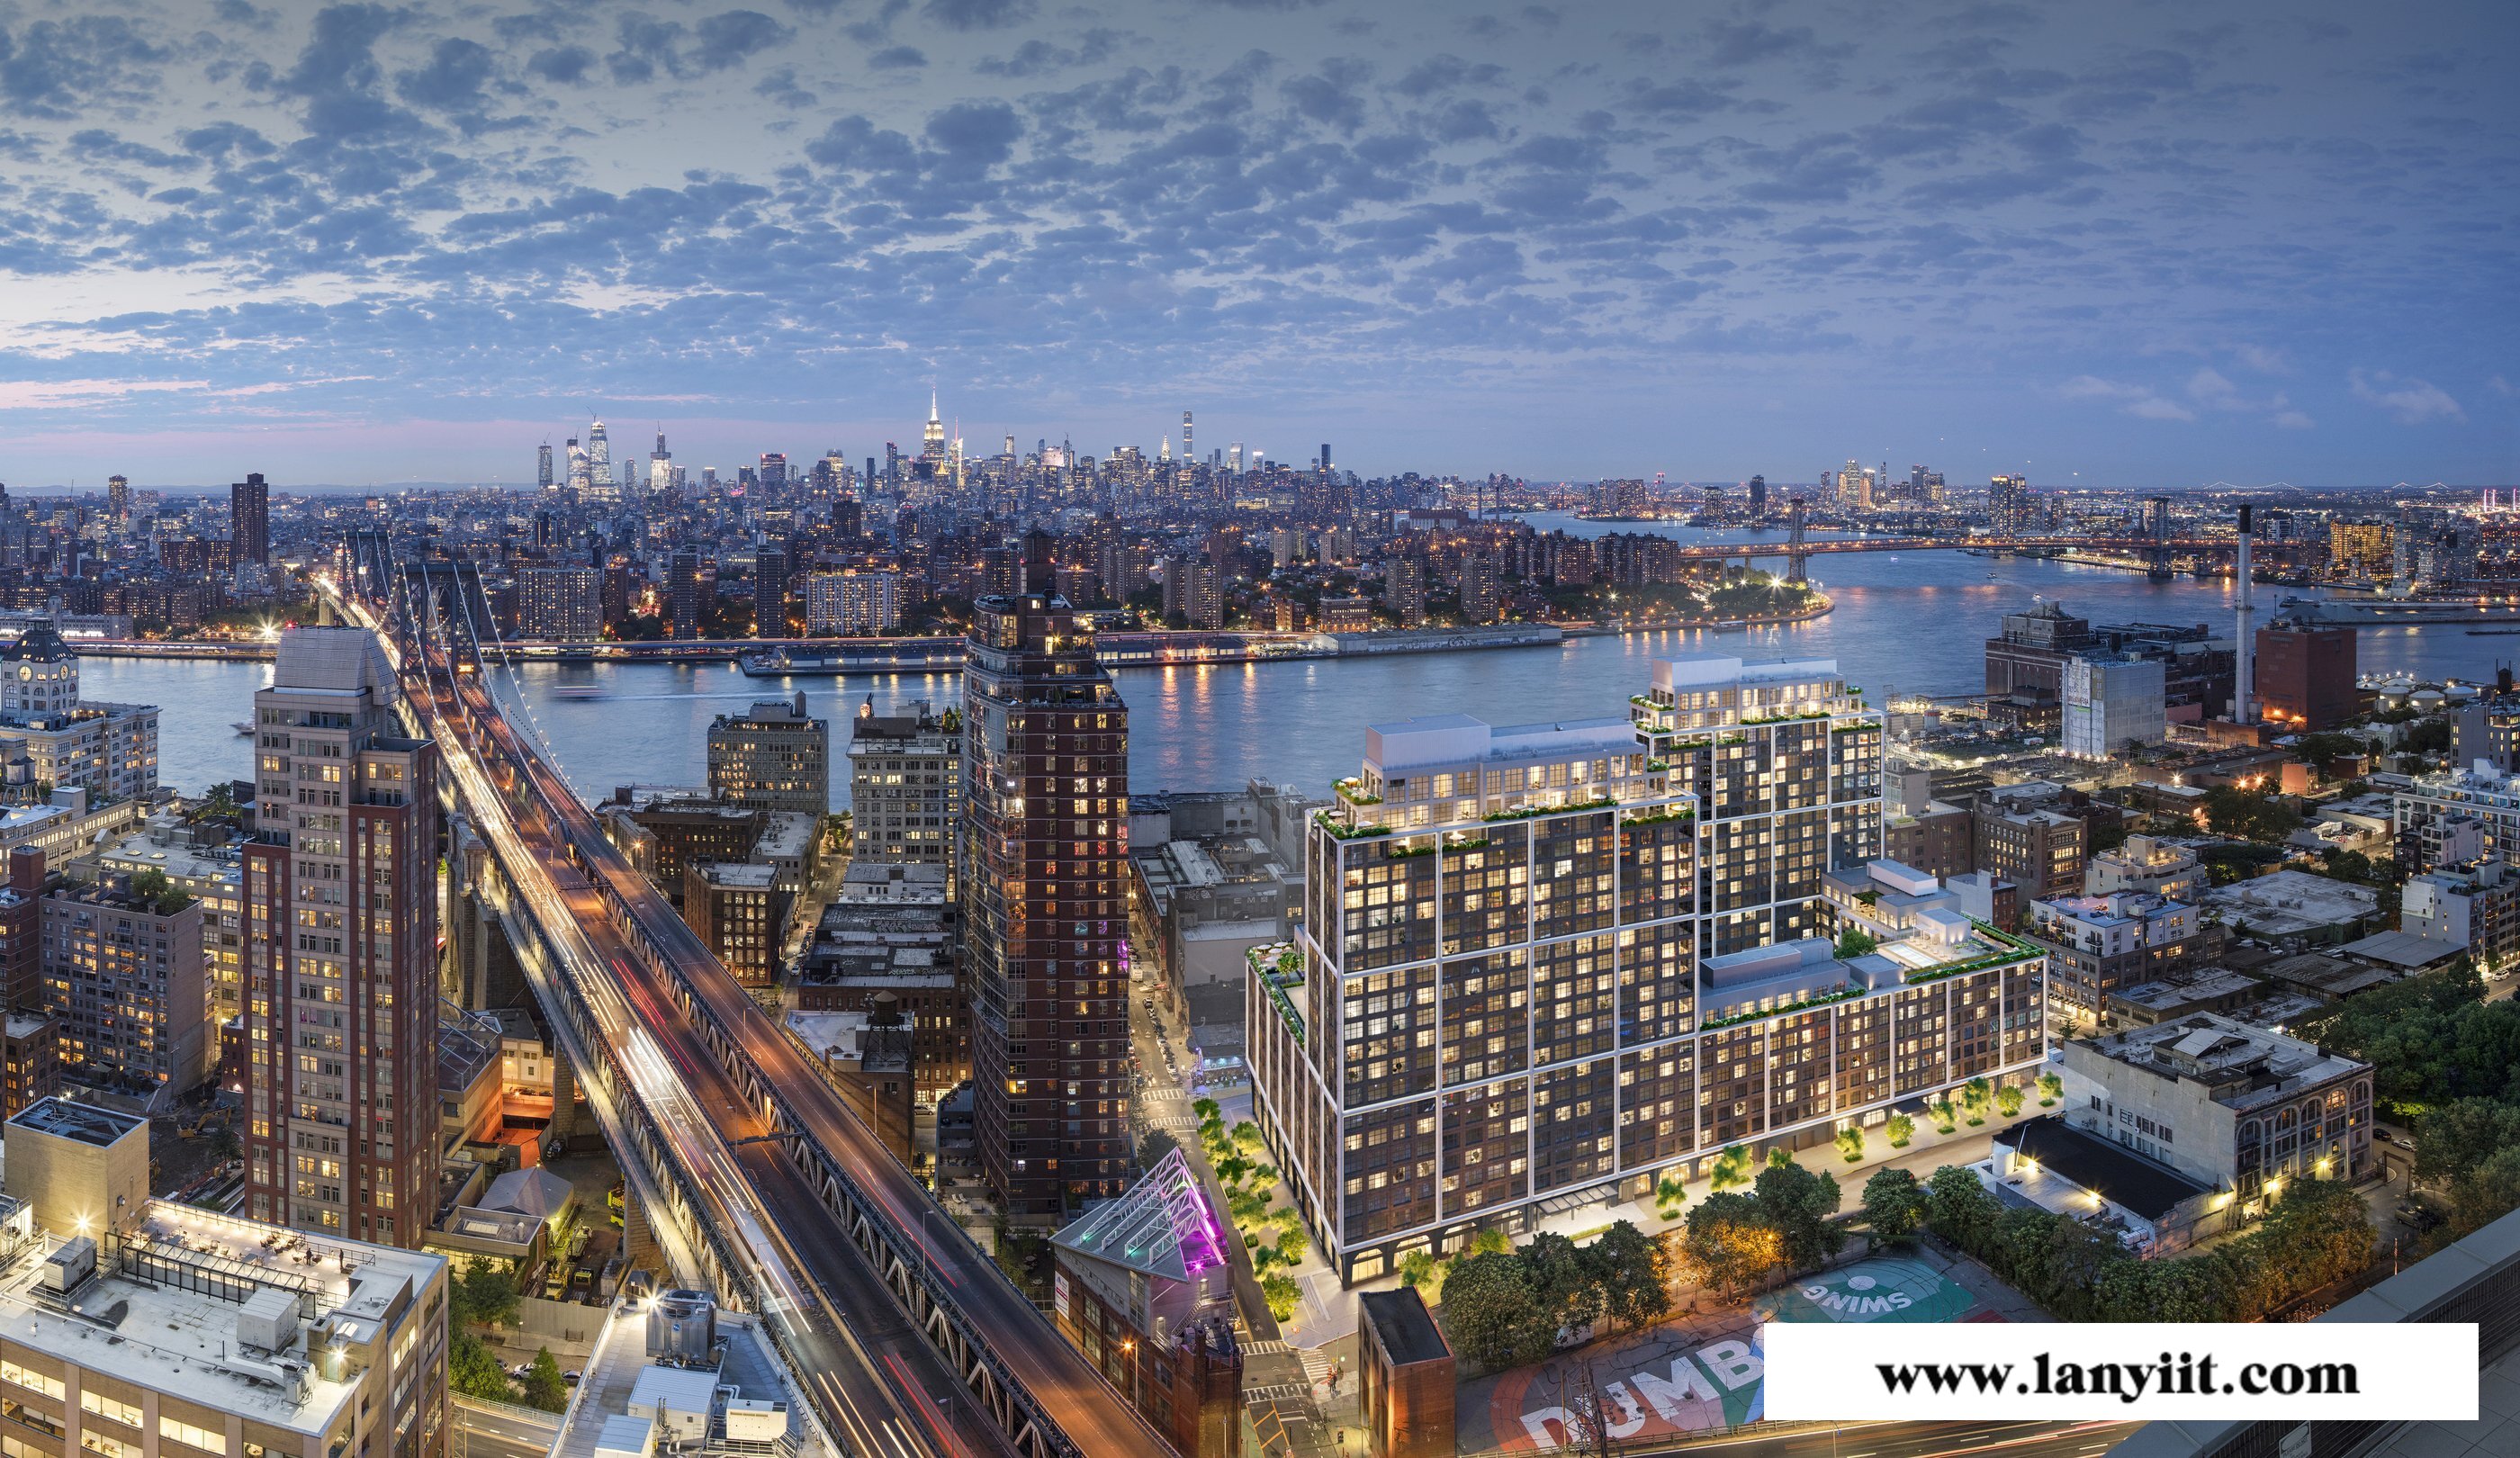 纽约极具潜力楼盘推荐:DUMBO社区豪华水景公寓 布鲁克林大桥公园畔的高端时尚生活(图2)